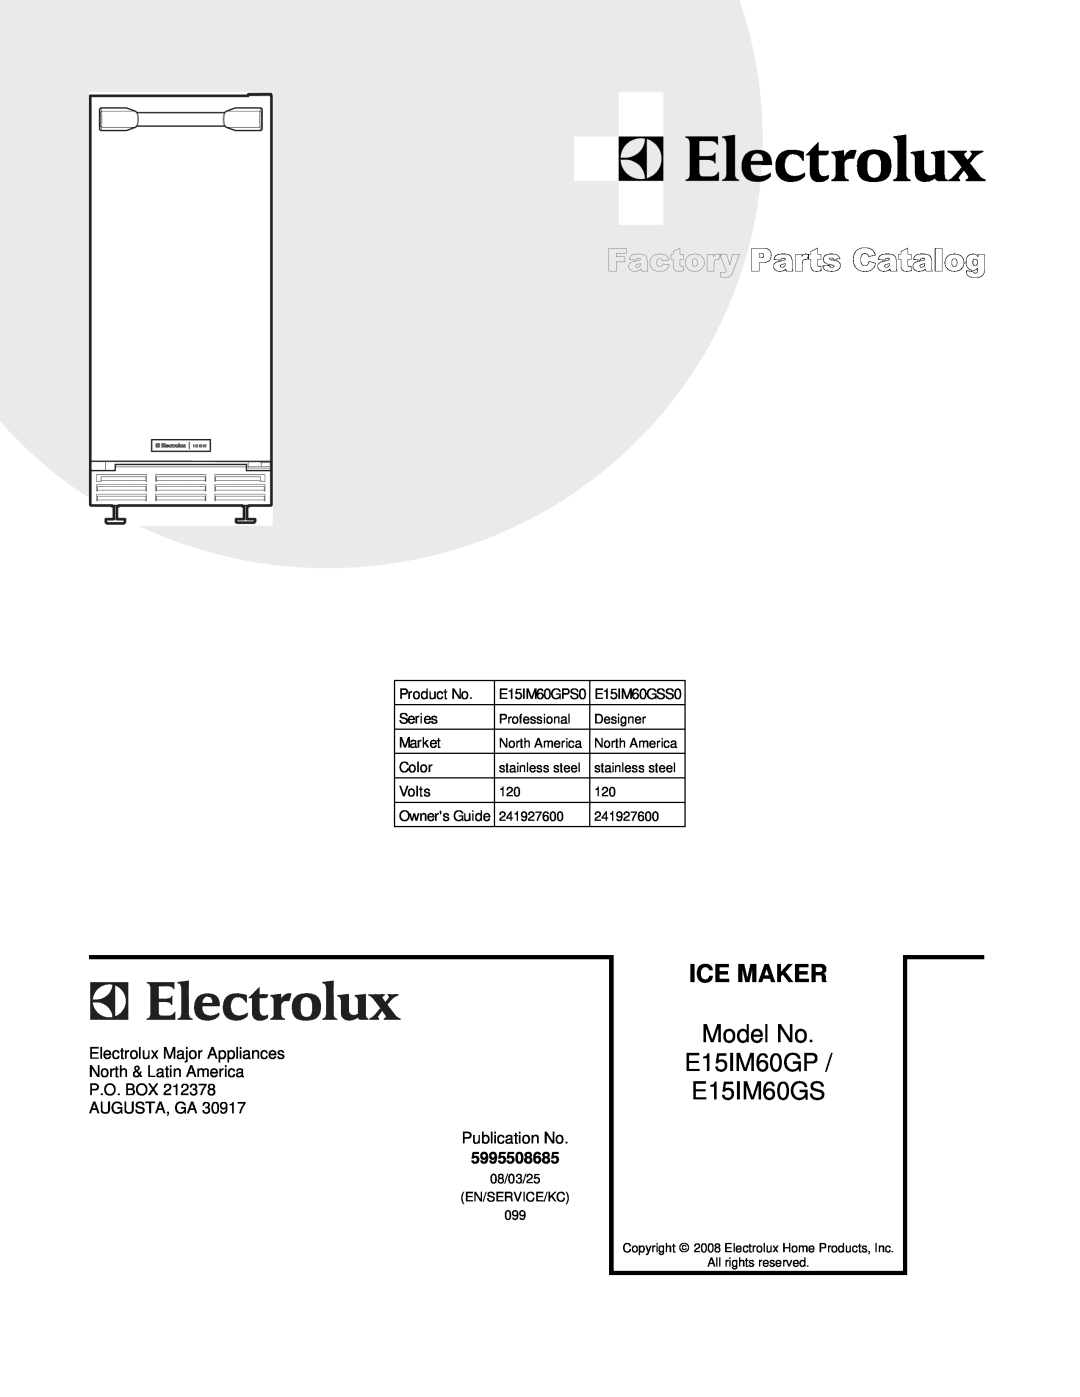 Electrolux E15IM60GSS0 manual Ice Maker, Model No E15IM60GP E15IM60GS, Product No, E15IM60GPS0, Series, Market, Color 